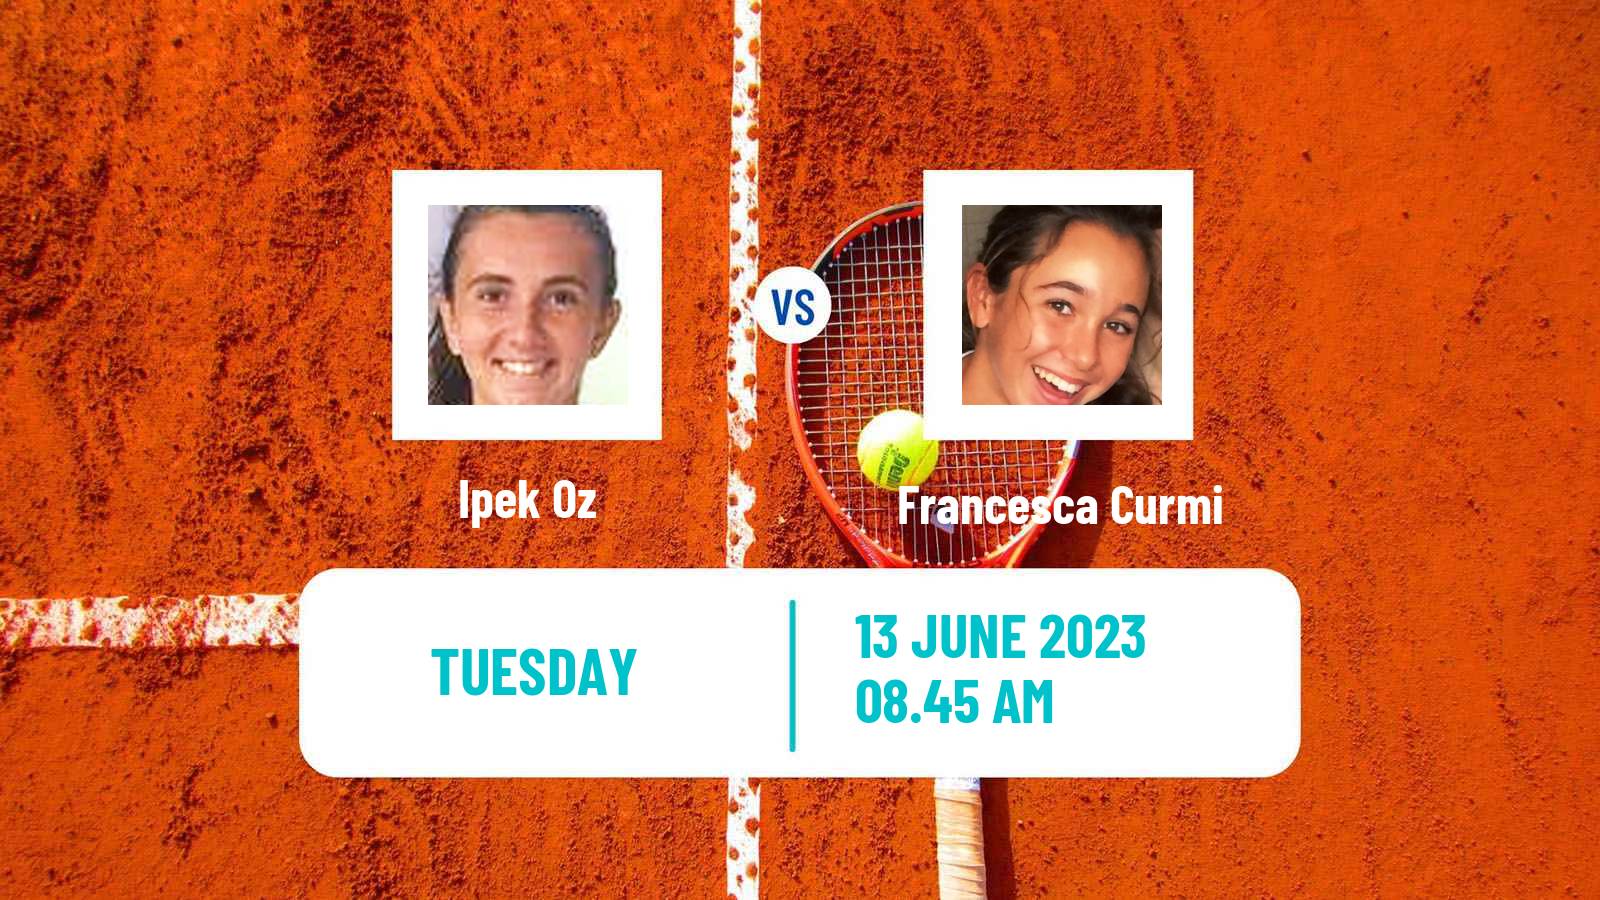 Tennis ITF W60 Biarritz Women Ipek Oz - Francesca Curmi